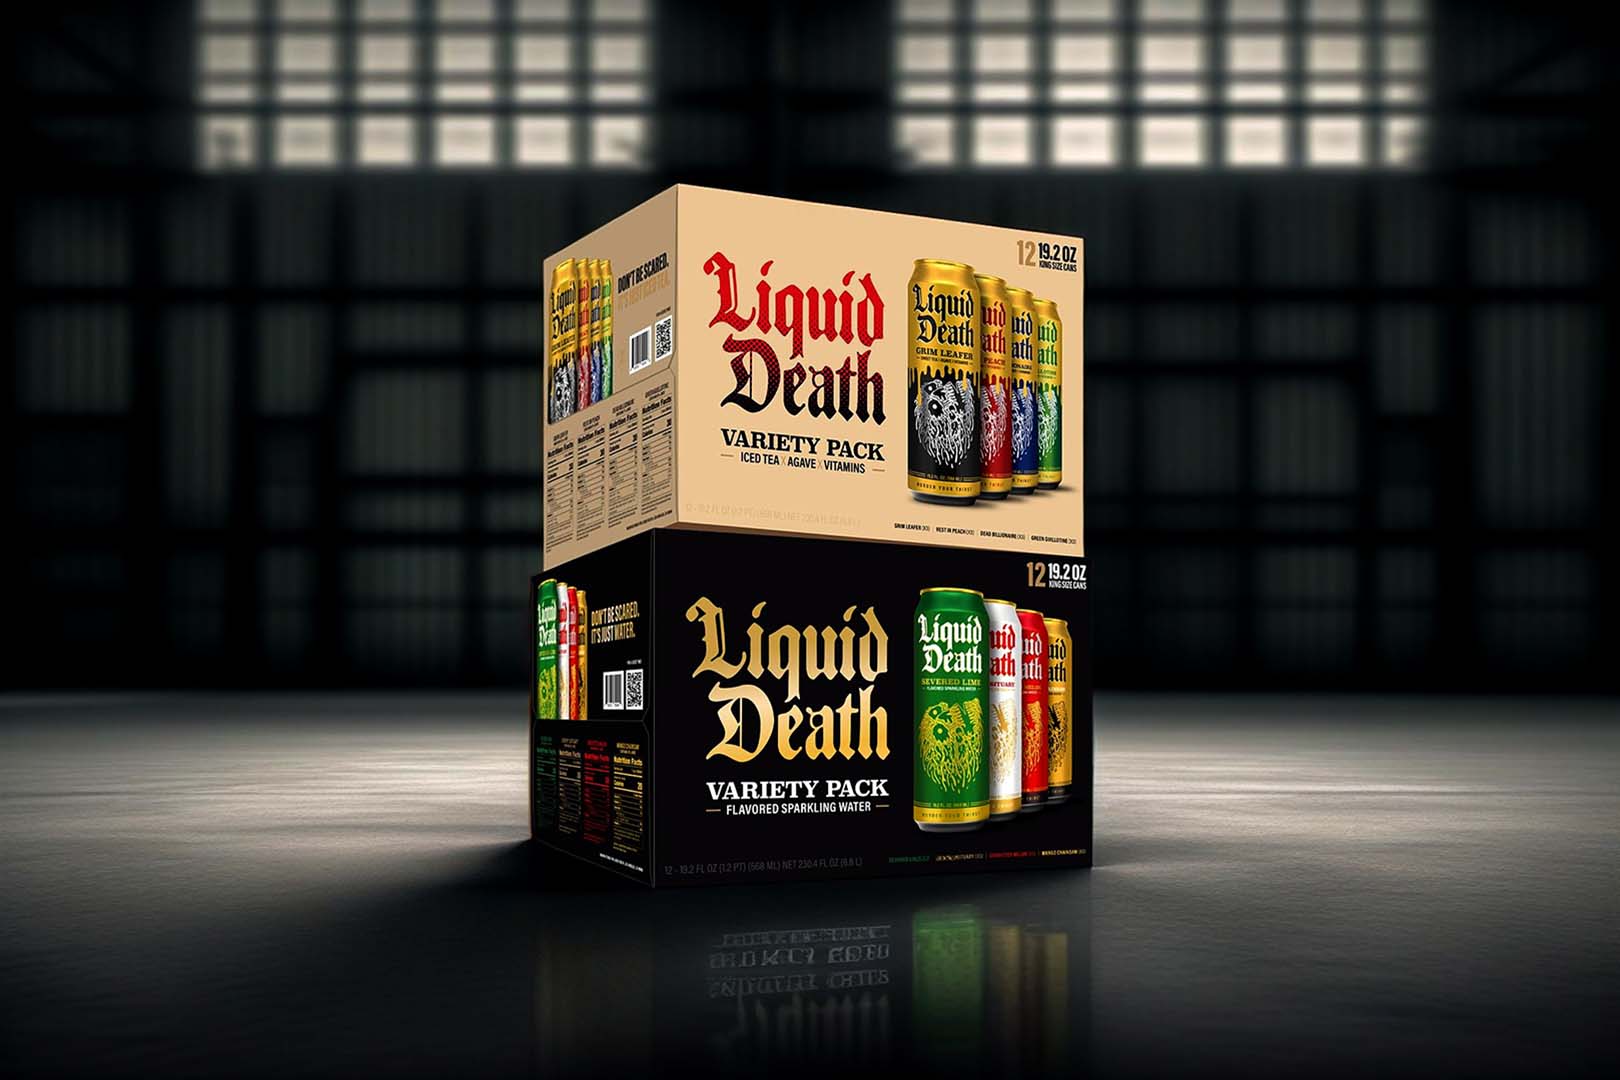 Liquid Death Variety Packs